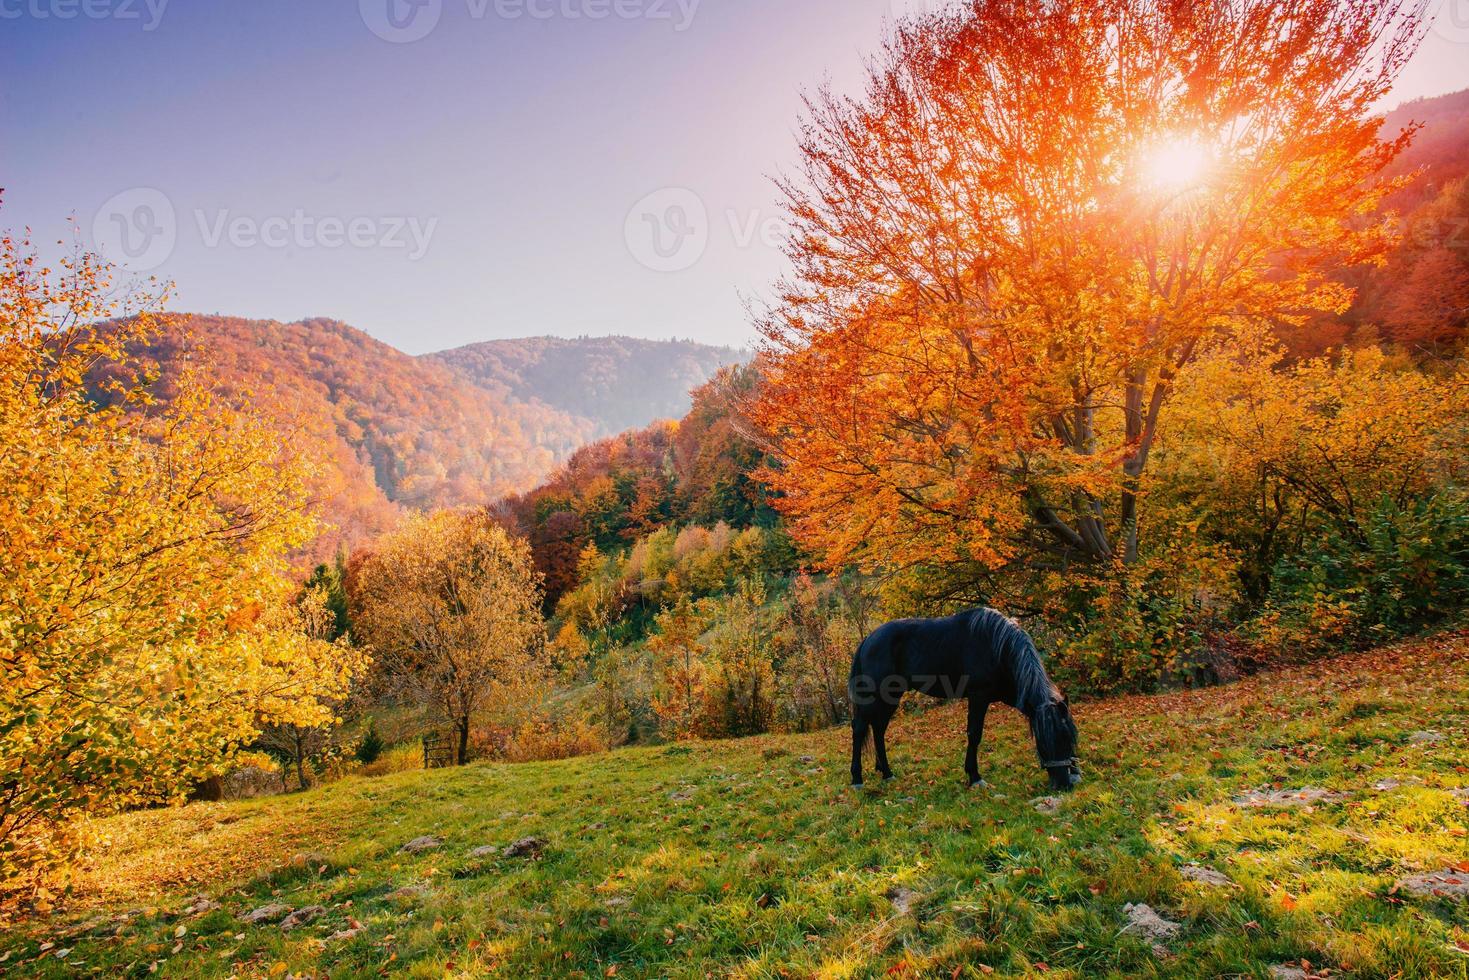 cavalo pastando no prado foto